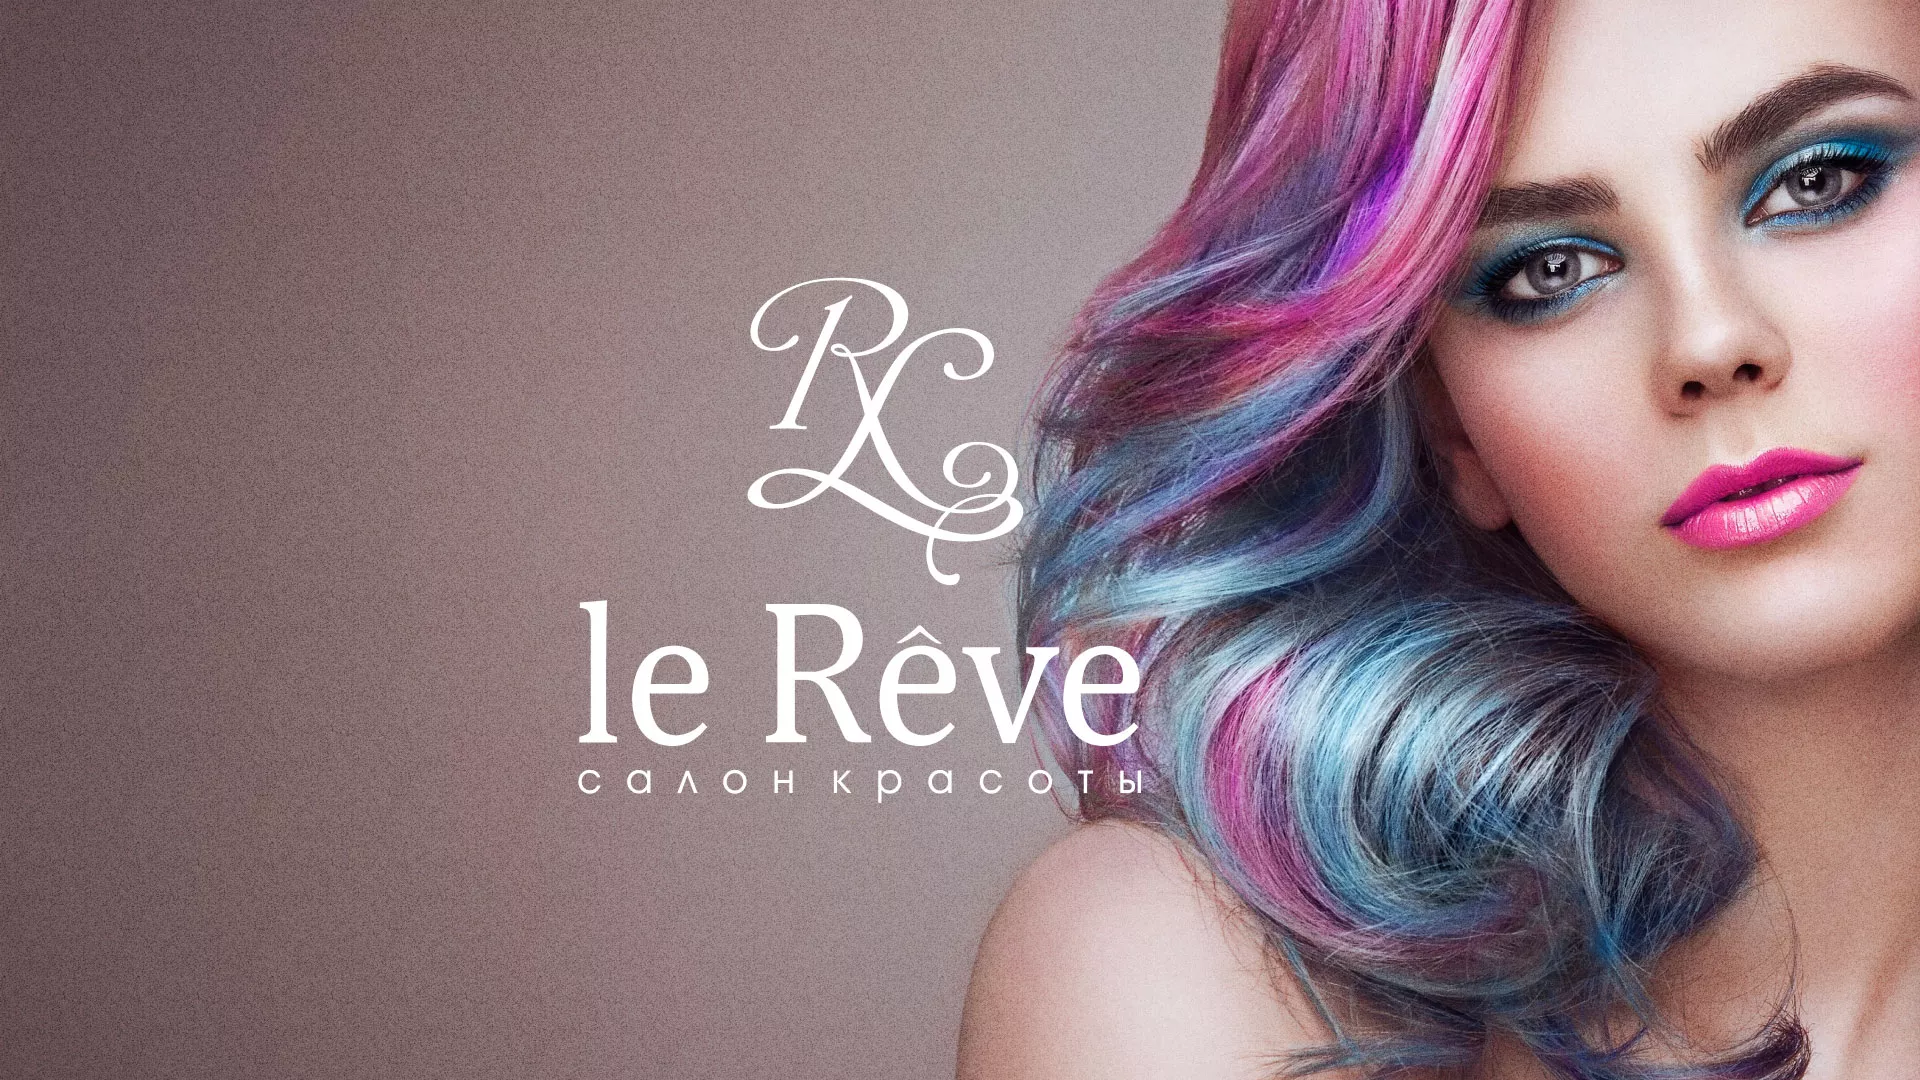 Создание сайта для салона красоты «Le Reve» в Малмыже